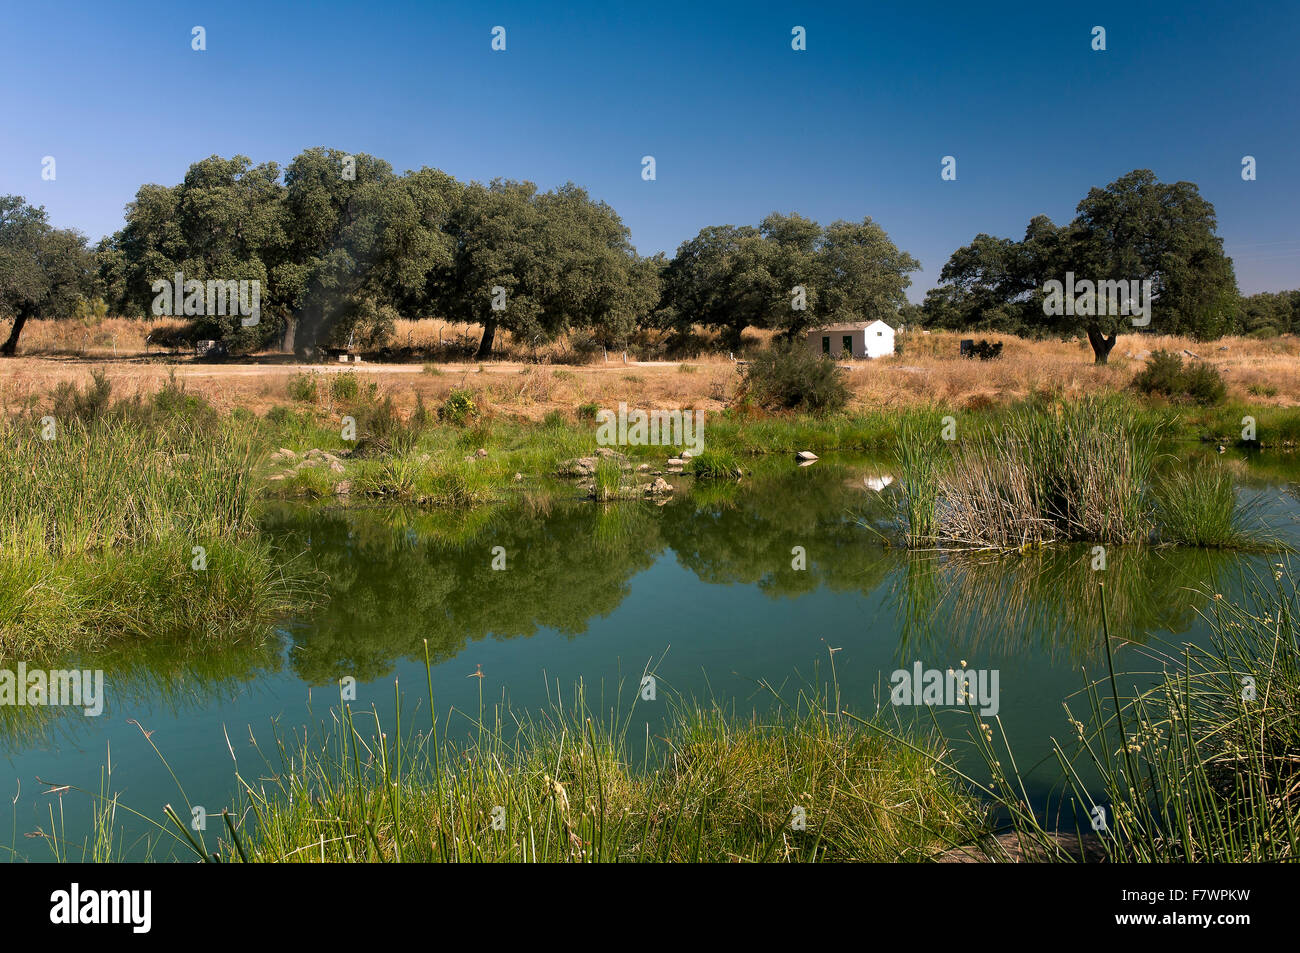 Le Parc Naturel de Sierra de Aracena, Cala, rivière, Santa Olalla del Cala Huelva province, région d'Andalousie, Espagne, Europe Banque D'Images